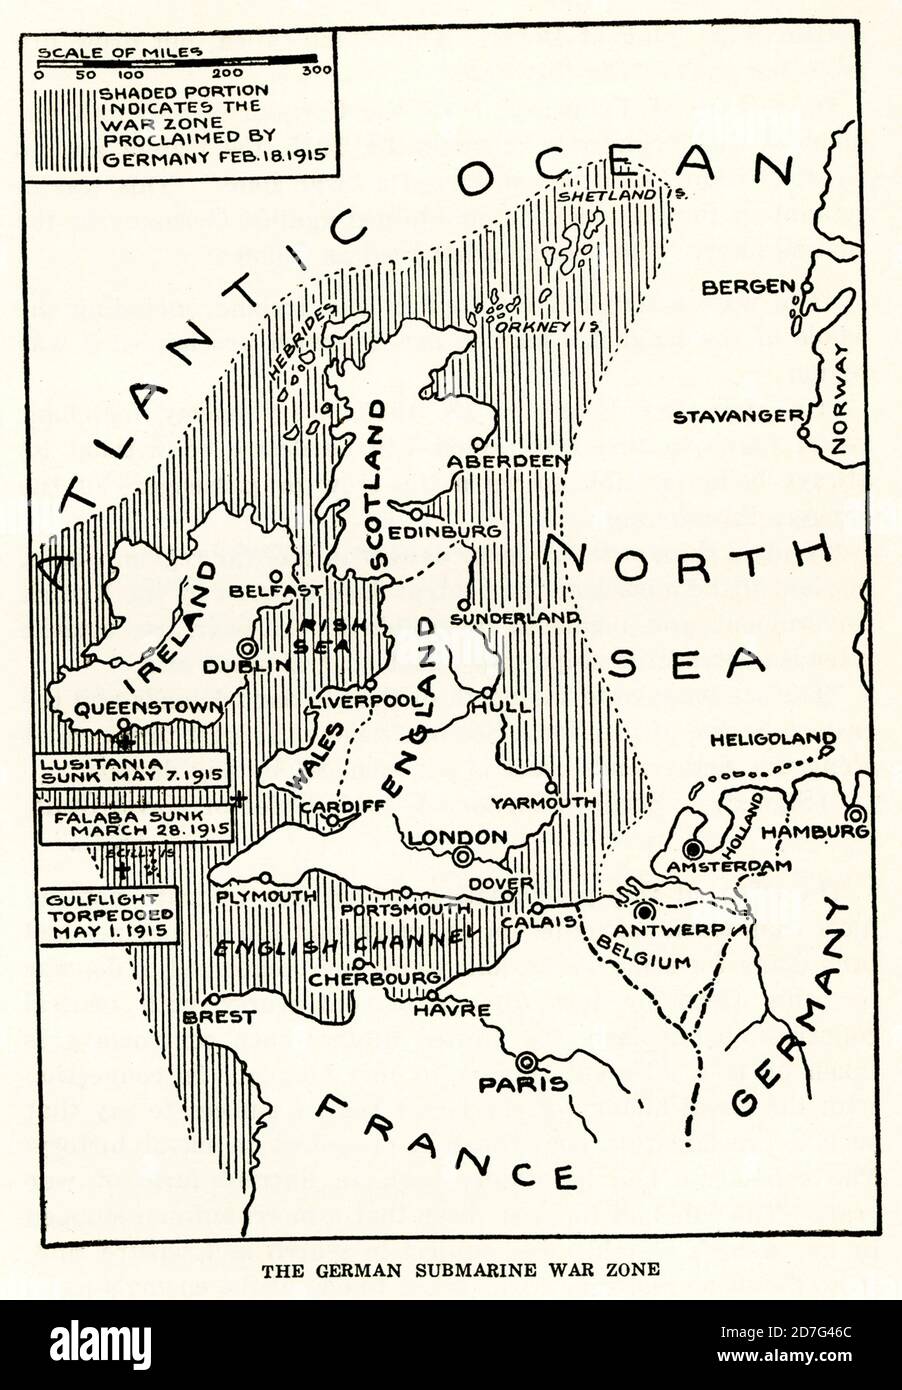 Cette carte de 1916 montre la zone de guerre sous-marine allemande dans la première Guerre mondiale à cette époque. Notez que la légende indique : la partie ombrée indique les zones de guerre proclamées par l'allemand le 18 février 1915. Banque D'Images